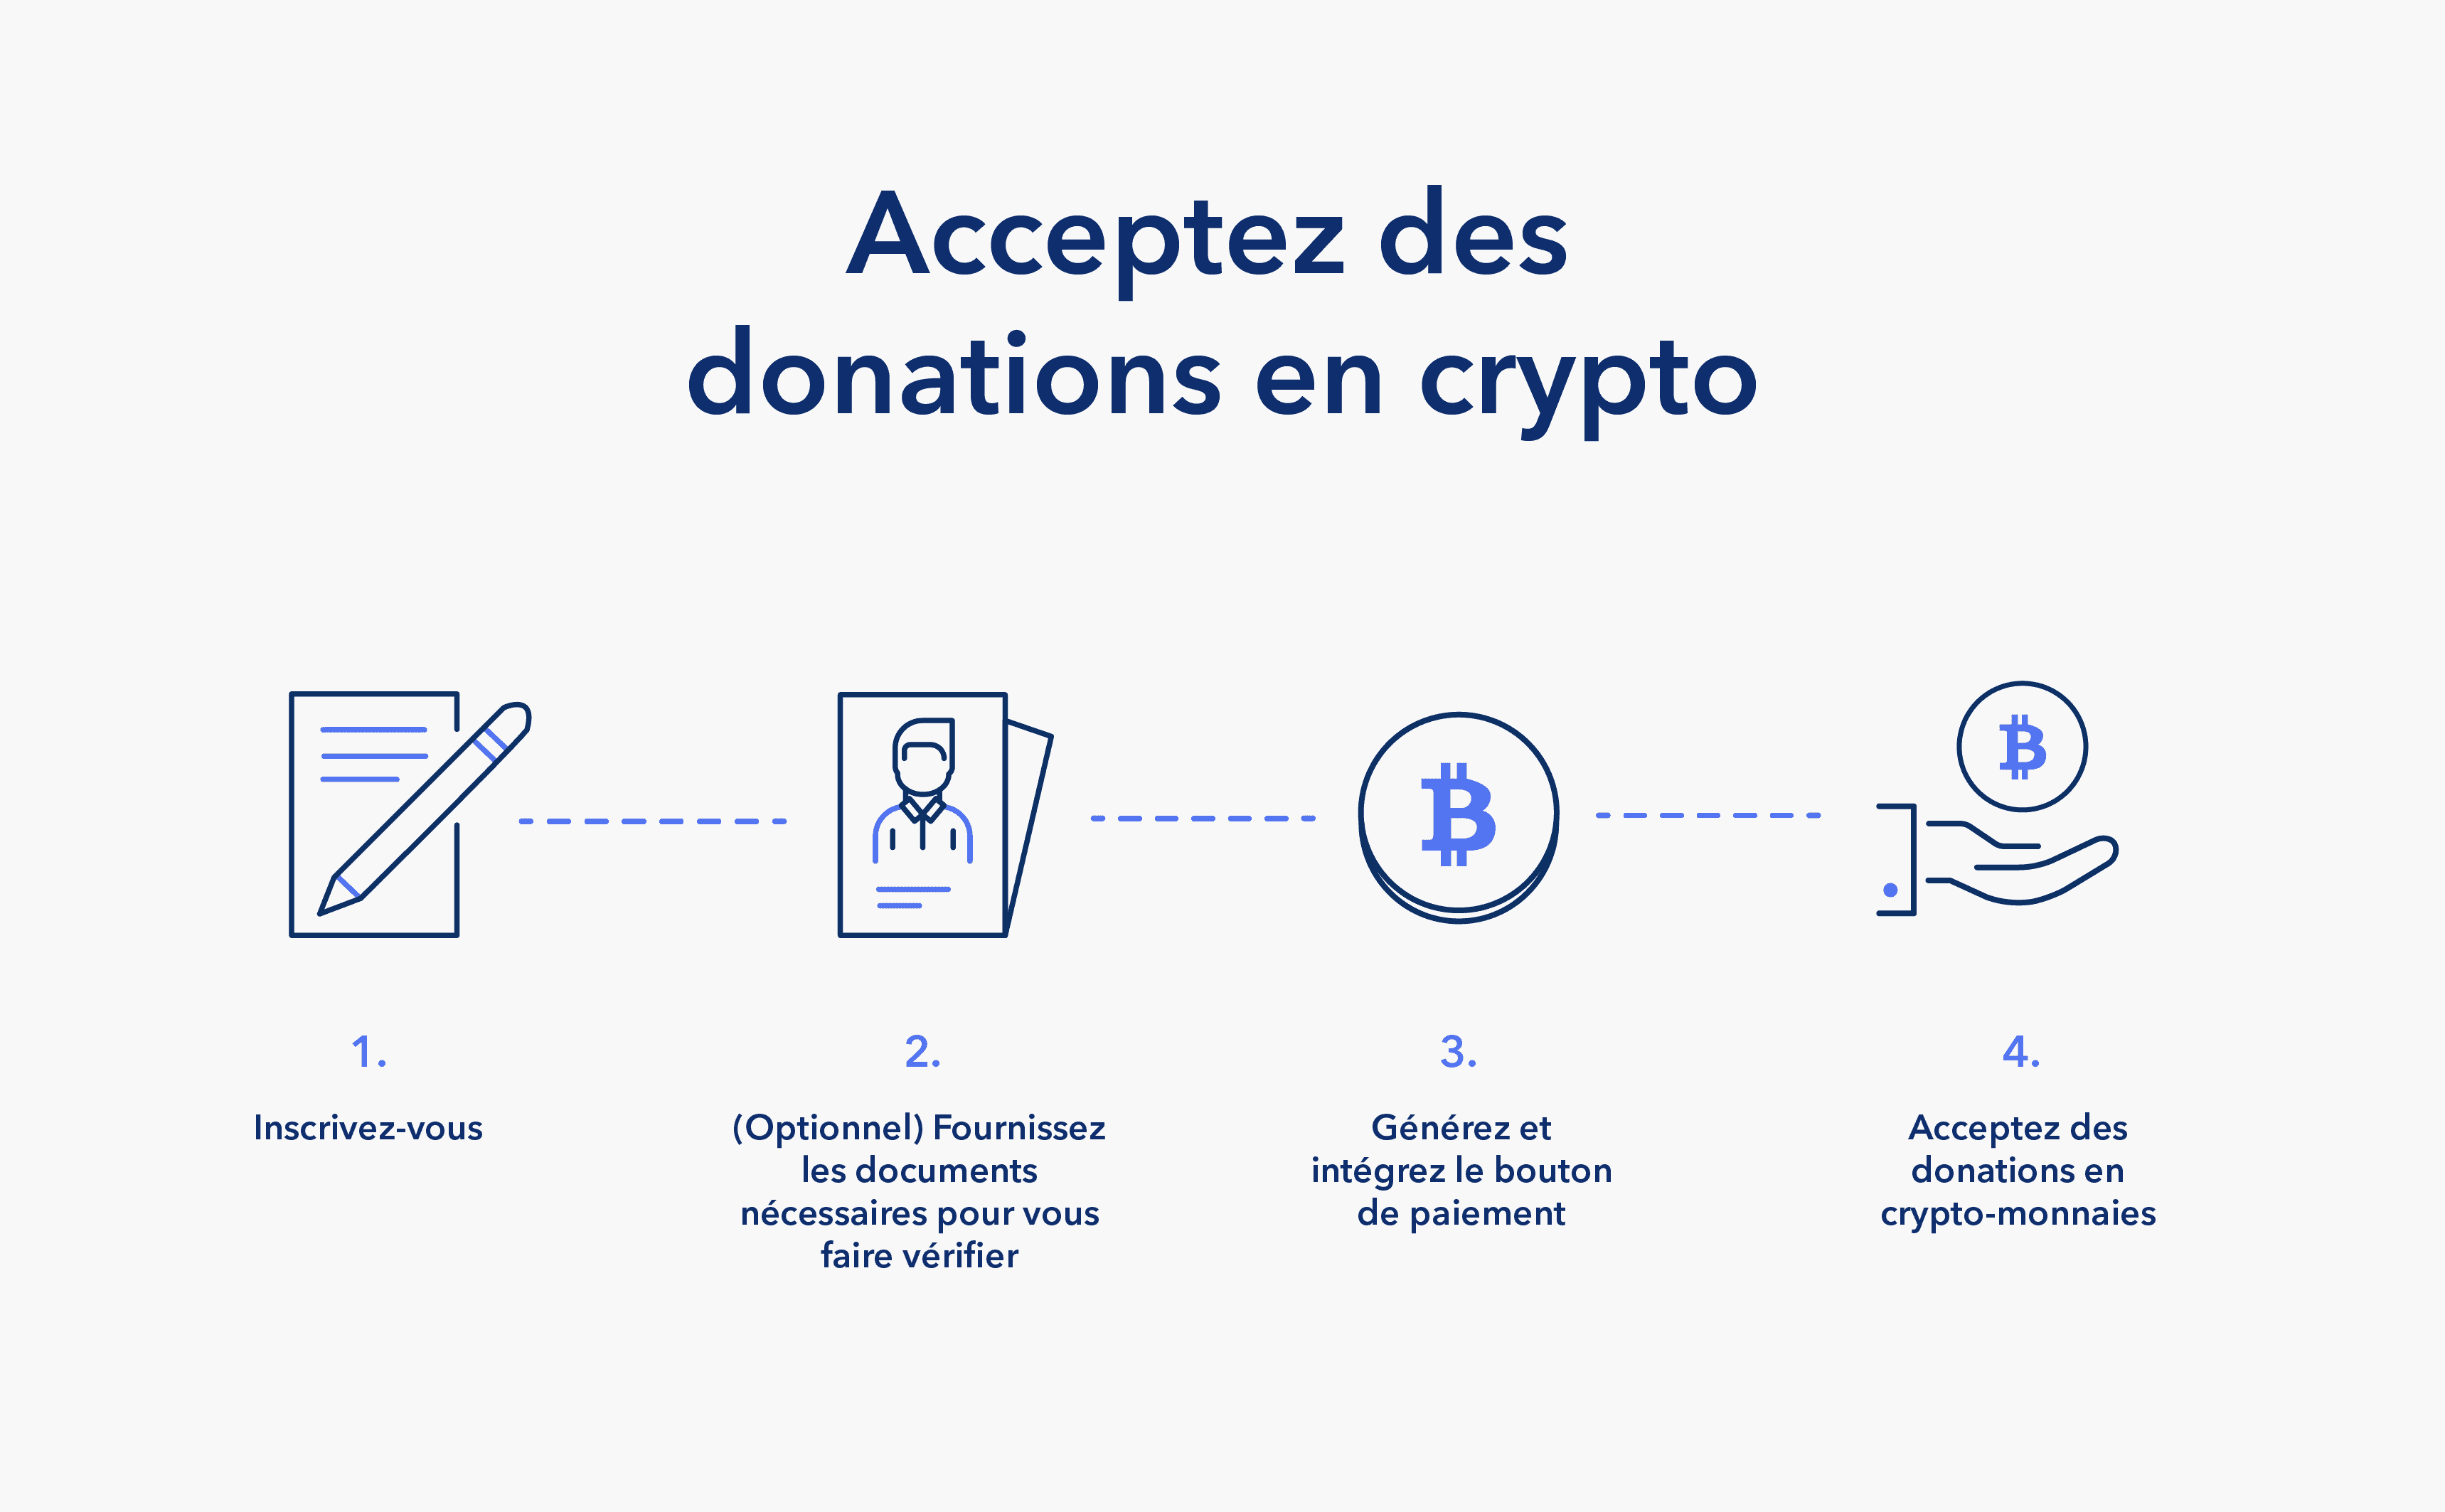 Acceptez désormais des donations en crypto-monnaie sur SpectroCoin.